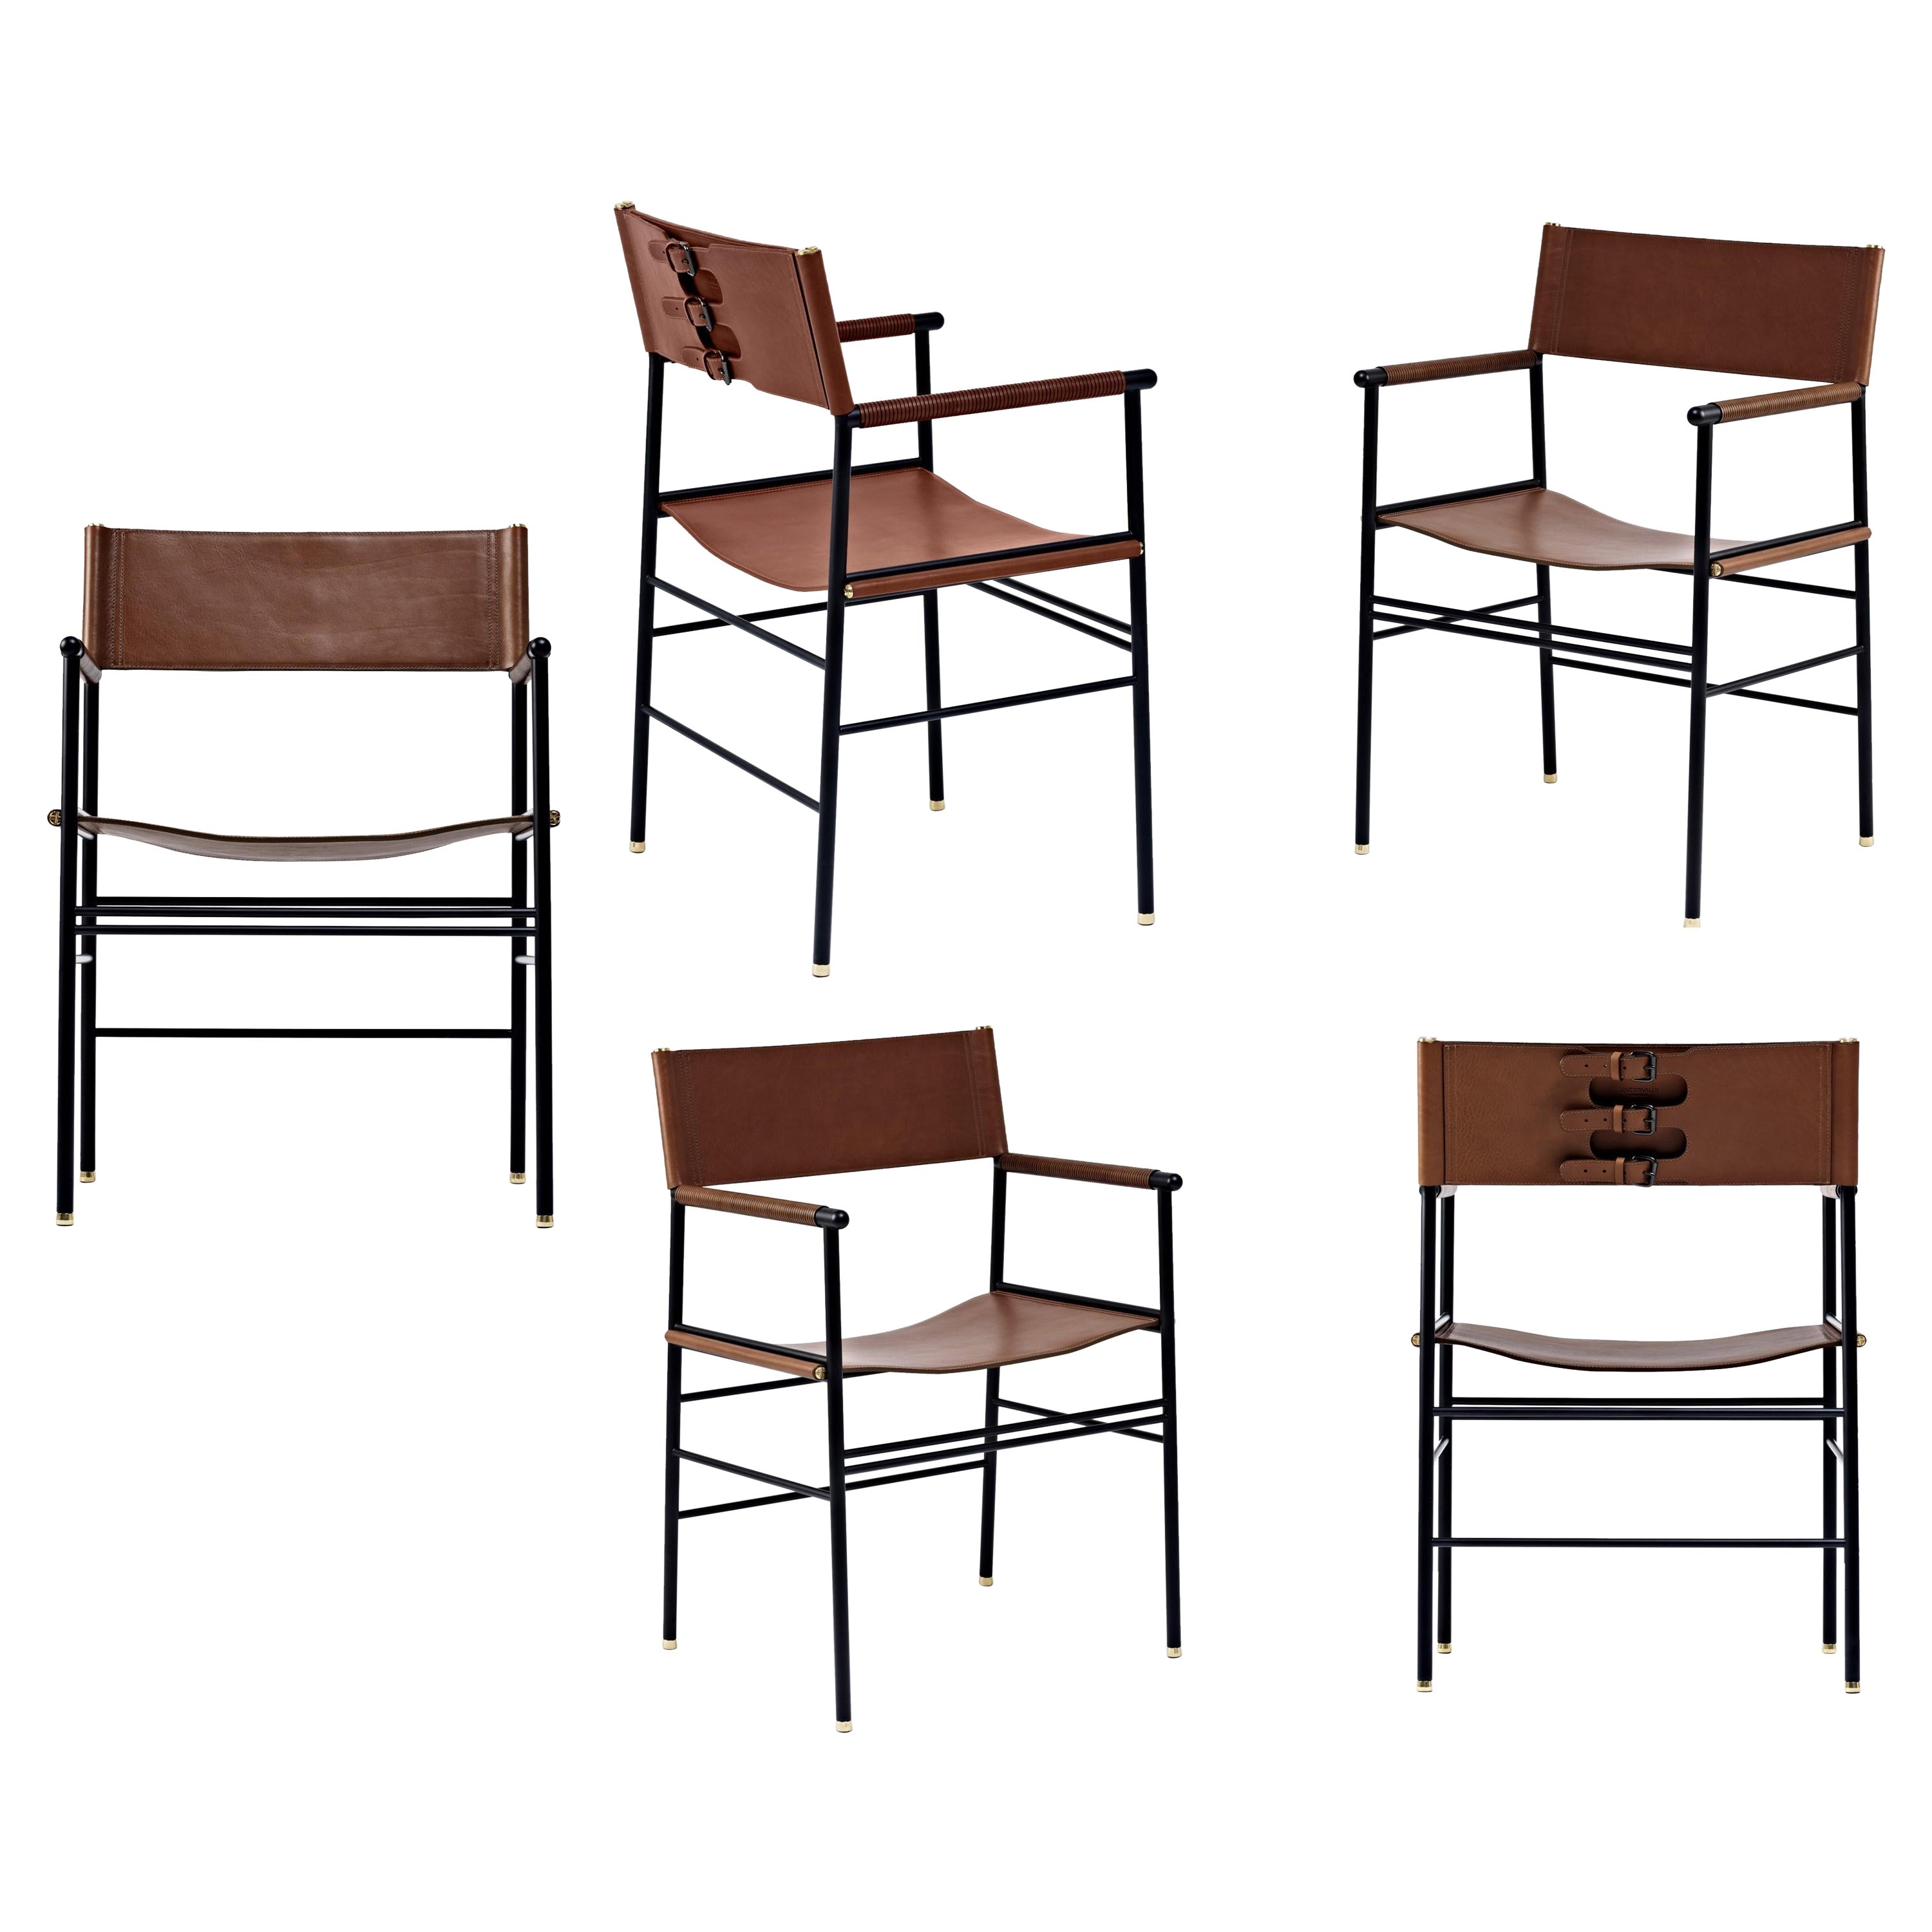 Ensemble de 5 fauteuils classiques contemporains en cuir marron foncé et métal en caoutchouc noir